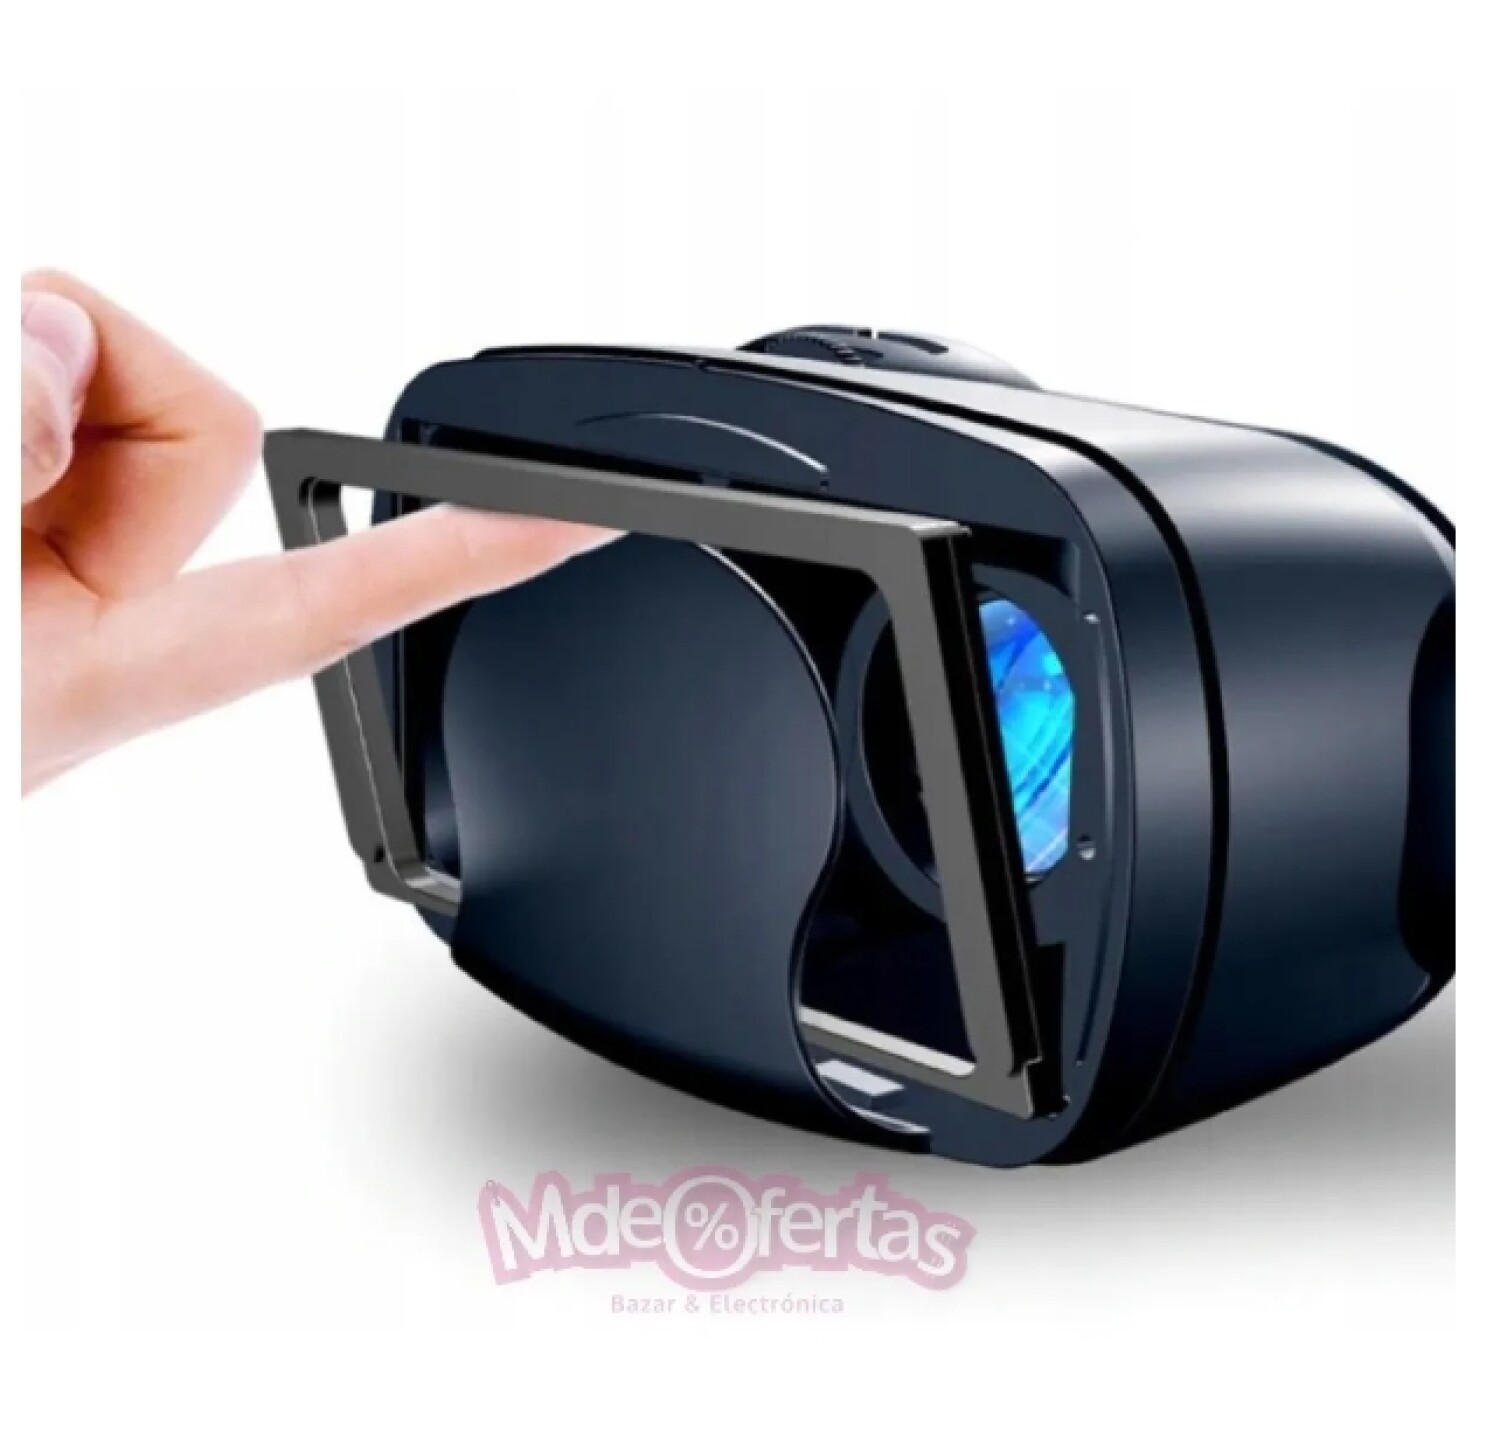 Gafas de realidad virtual para smartphone - dimensiones máx. 163 x 83 mm